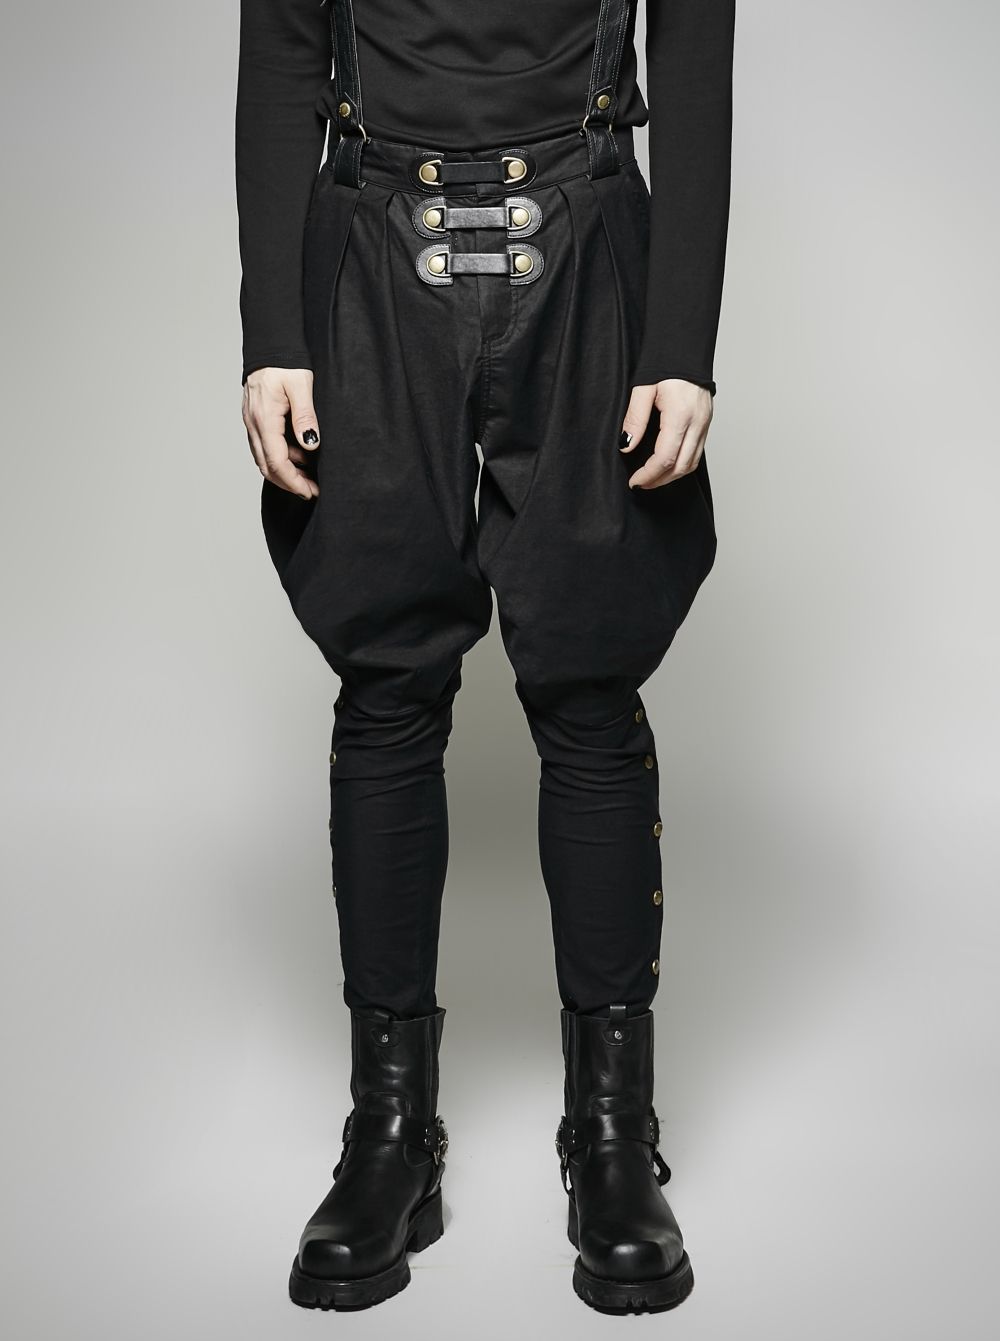 Pantalon gothique punk steampunk militaire sangles cuir boutons PunkRave homme 